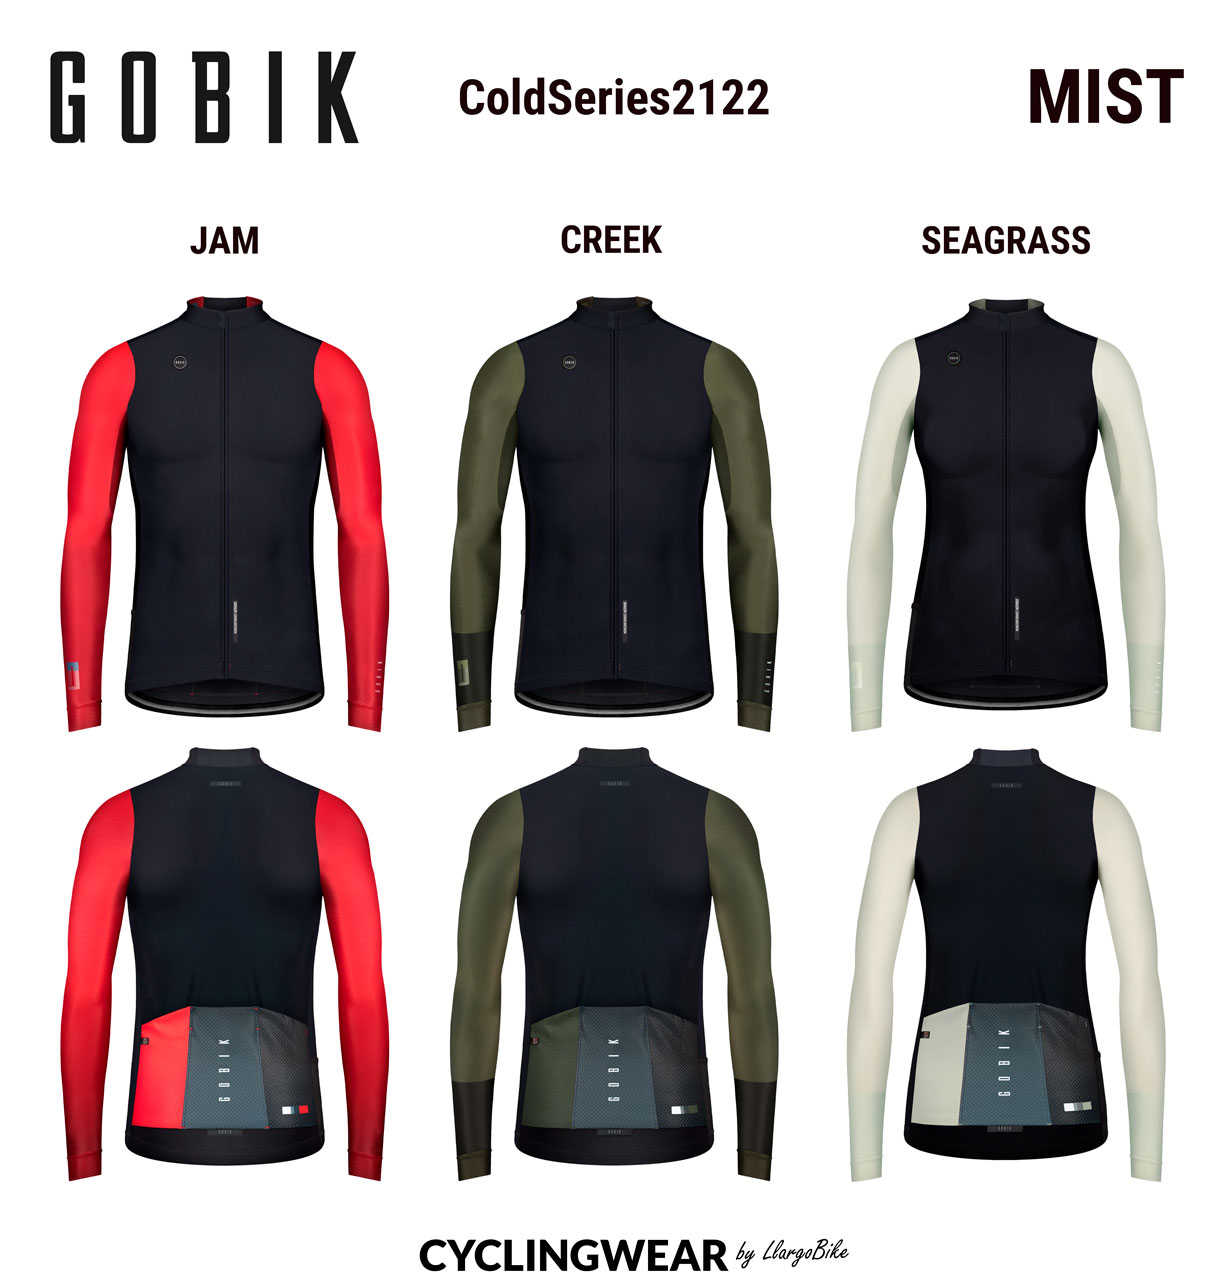 gobik-coldseries2122-mist-cyclingwear-by-llargobike-v01